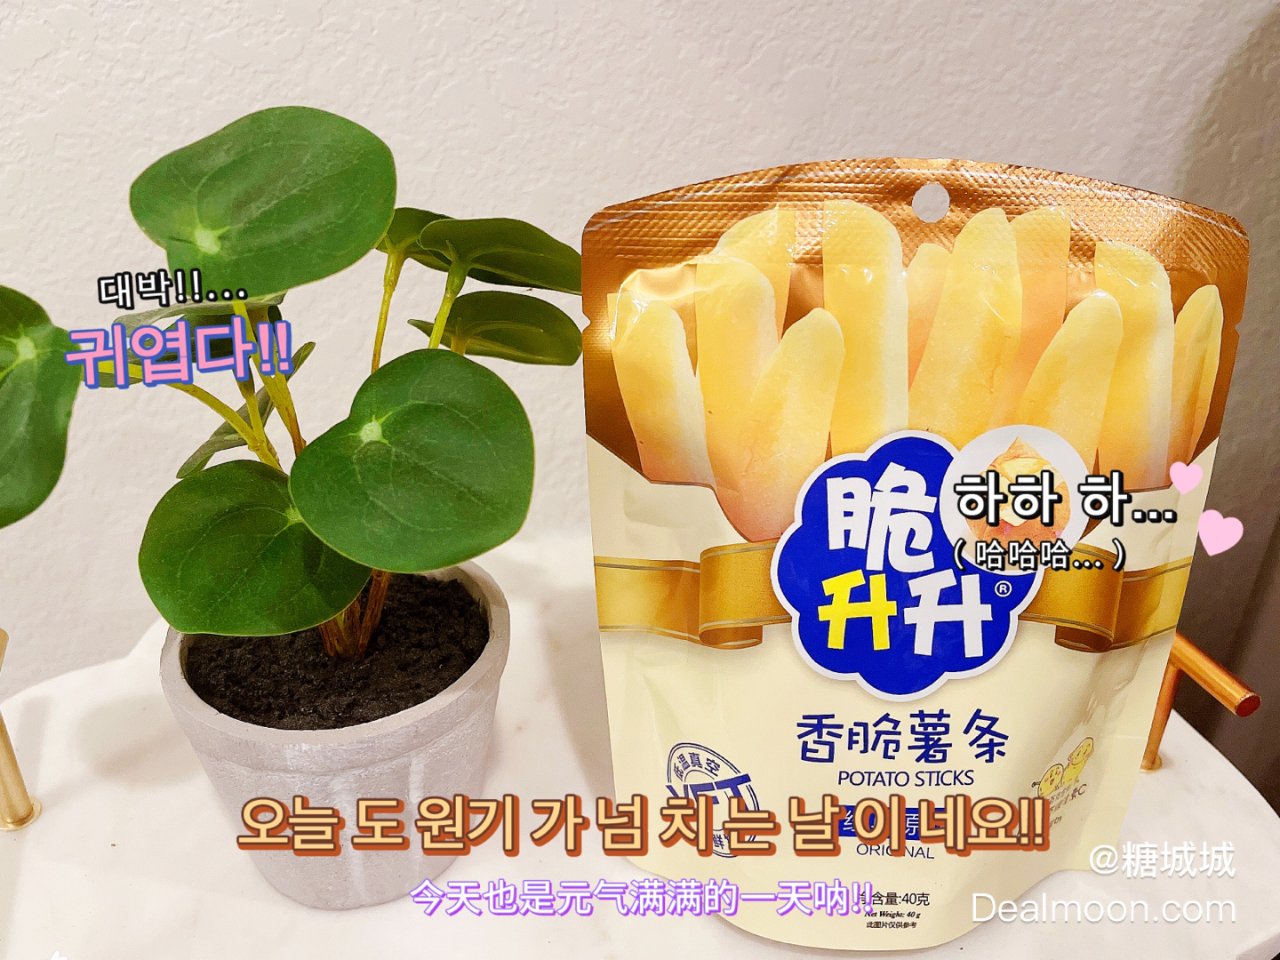 【国货新品】脆升升 薯条原味 40g - 亚米